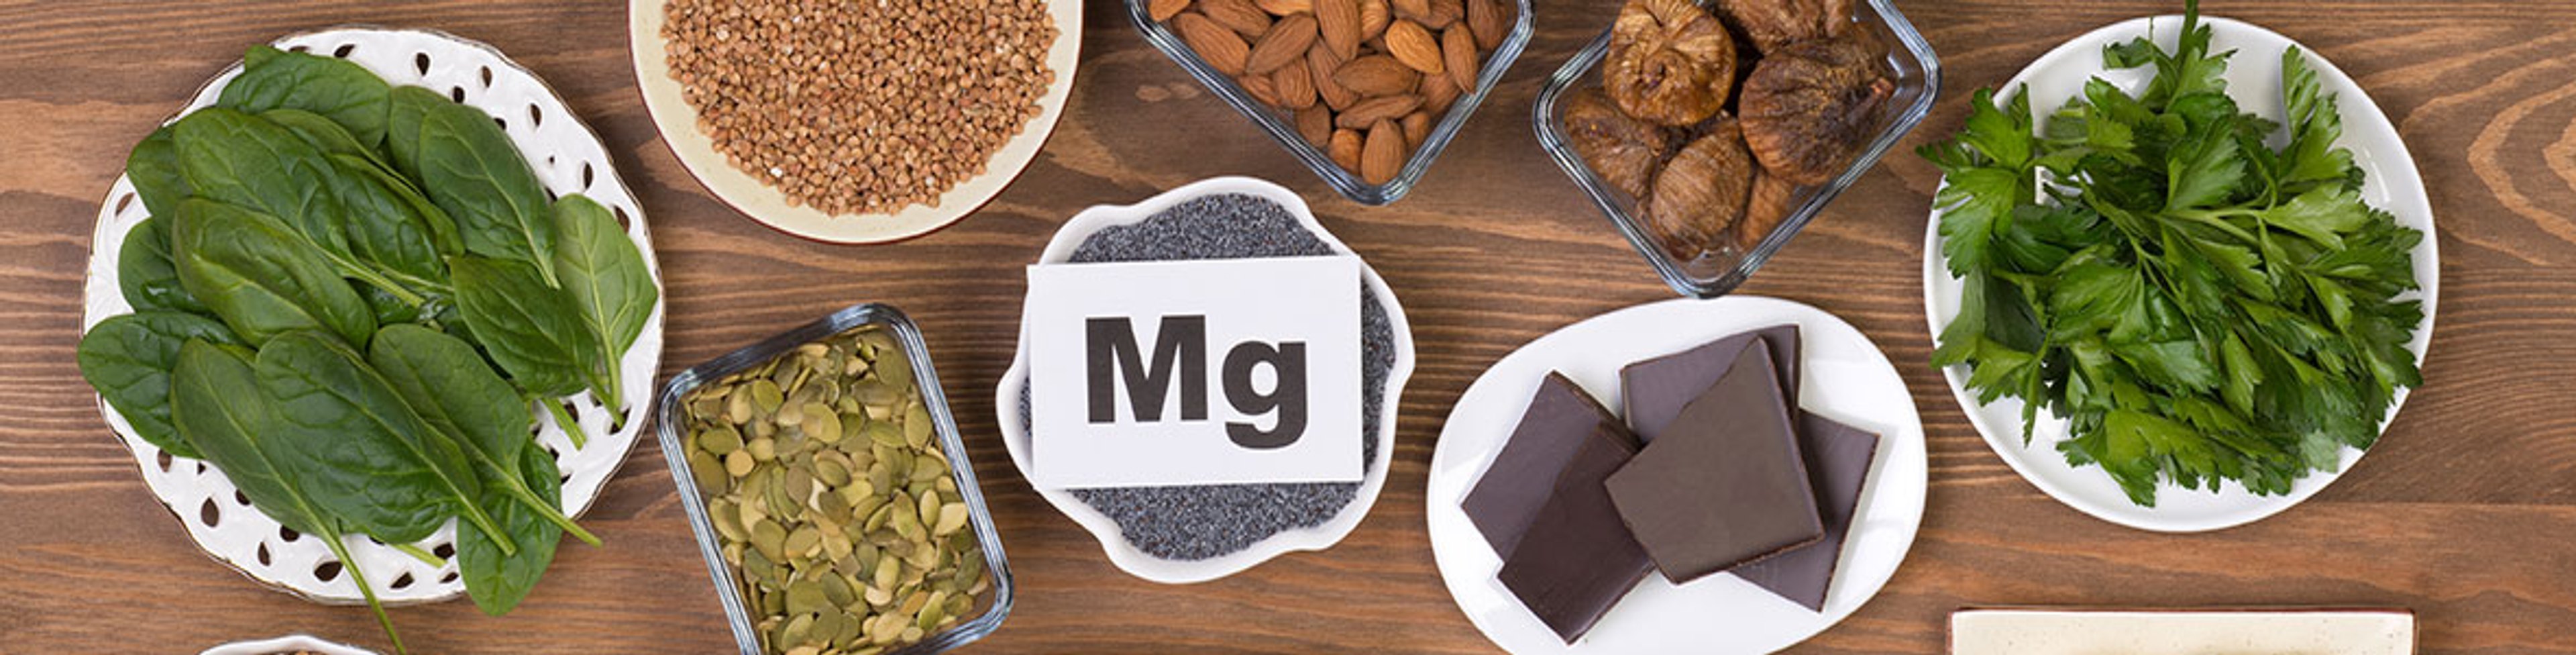 Warum Magnesium für Gesundheit und Wohlbefinden so wichtig ist